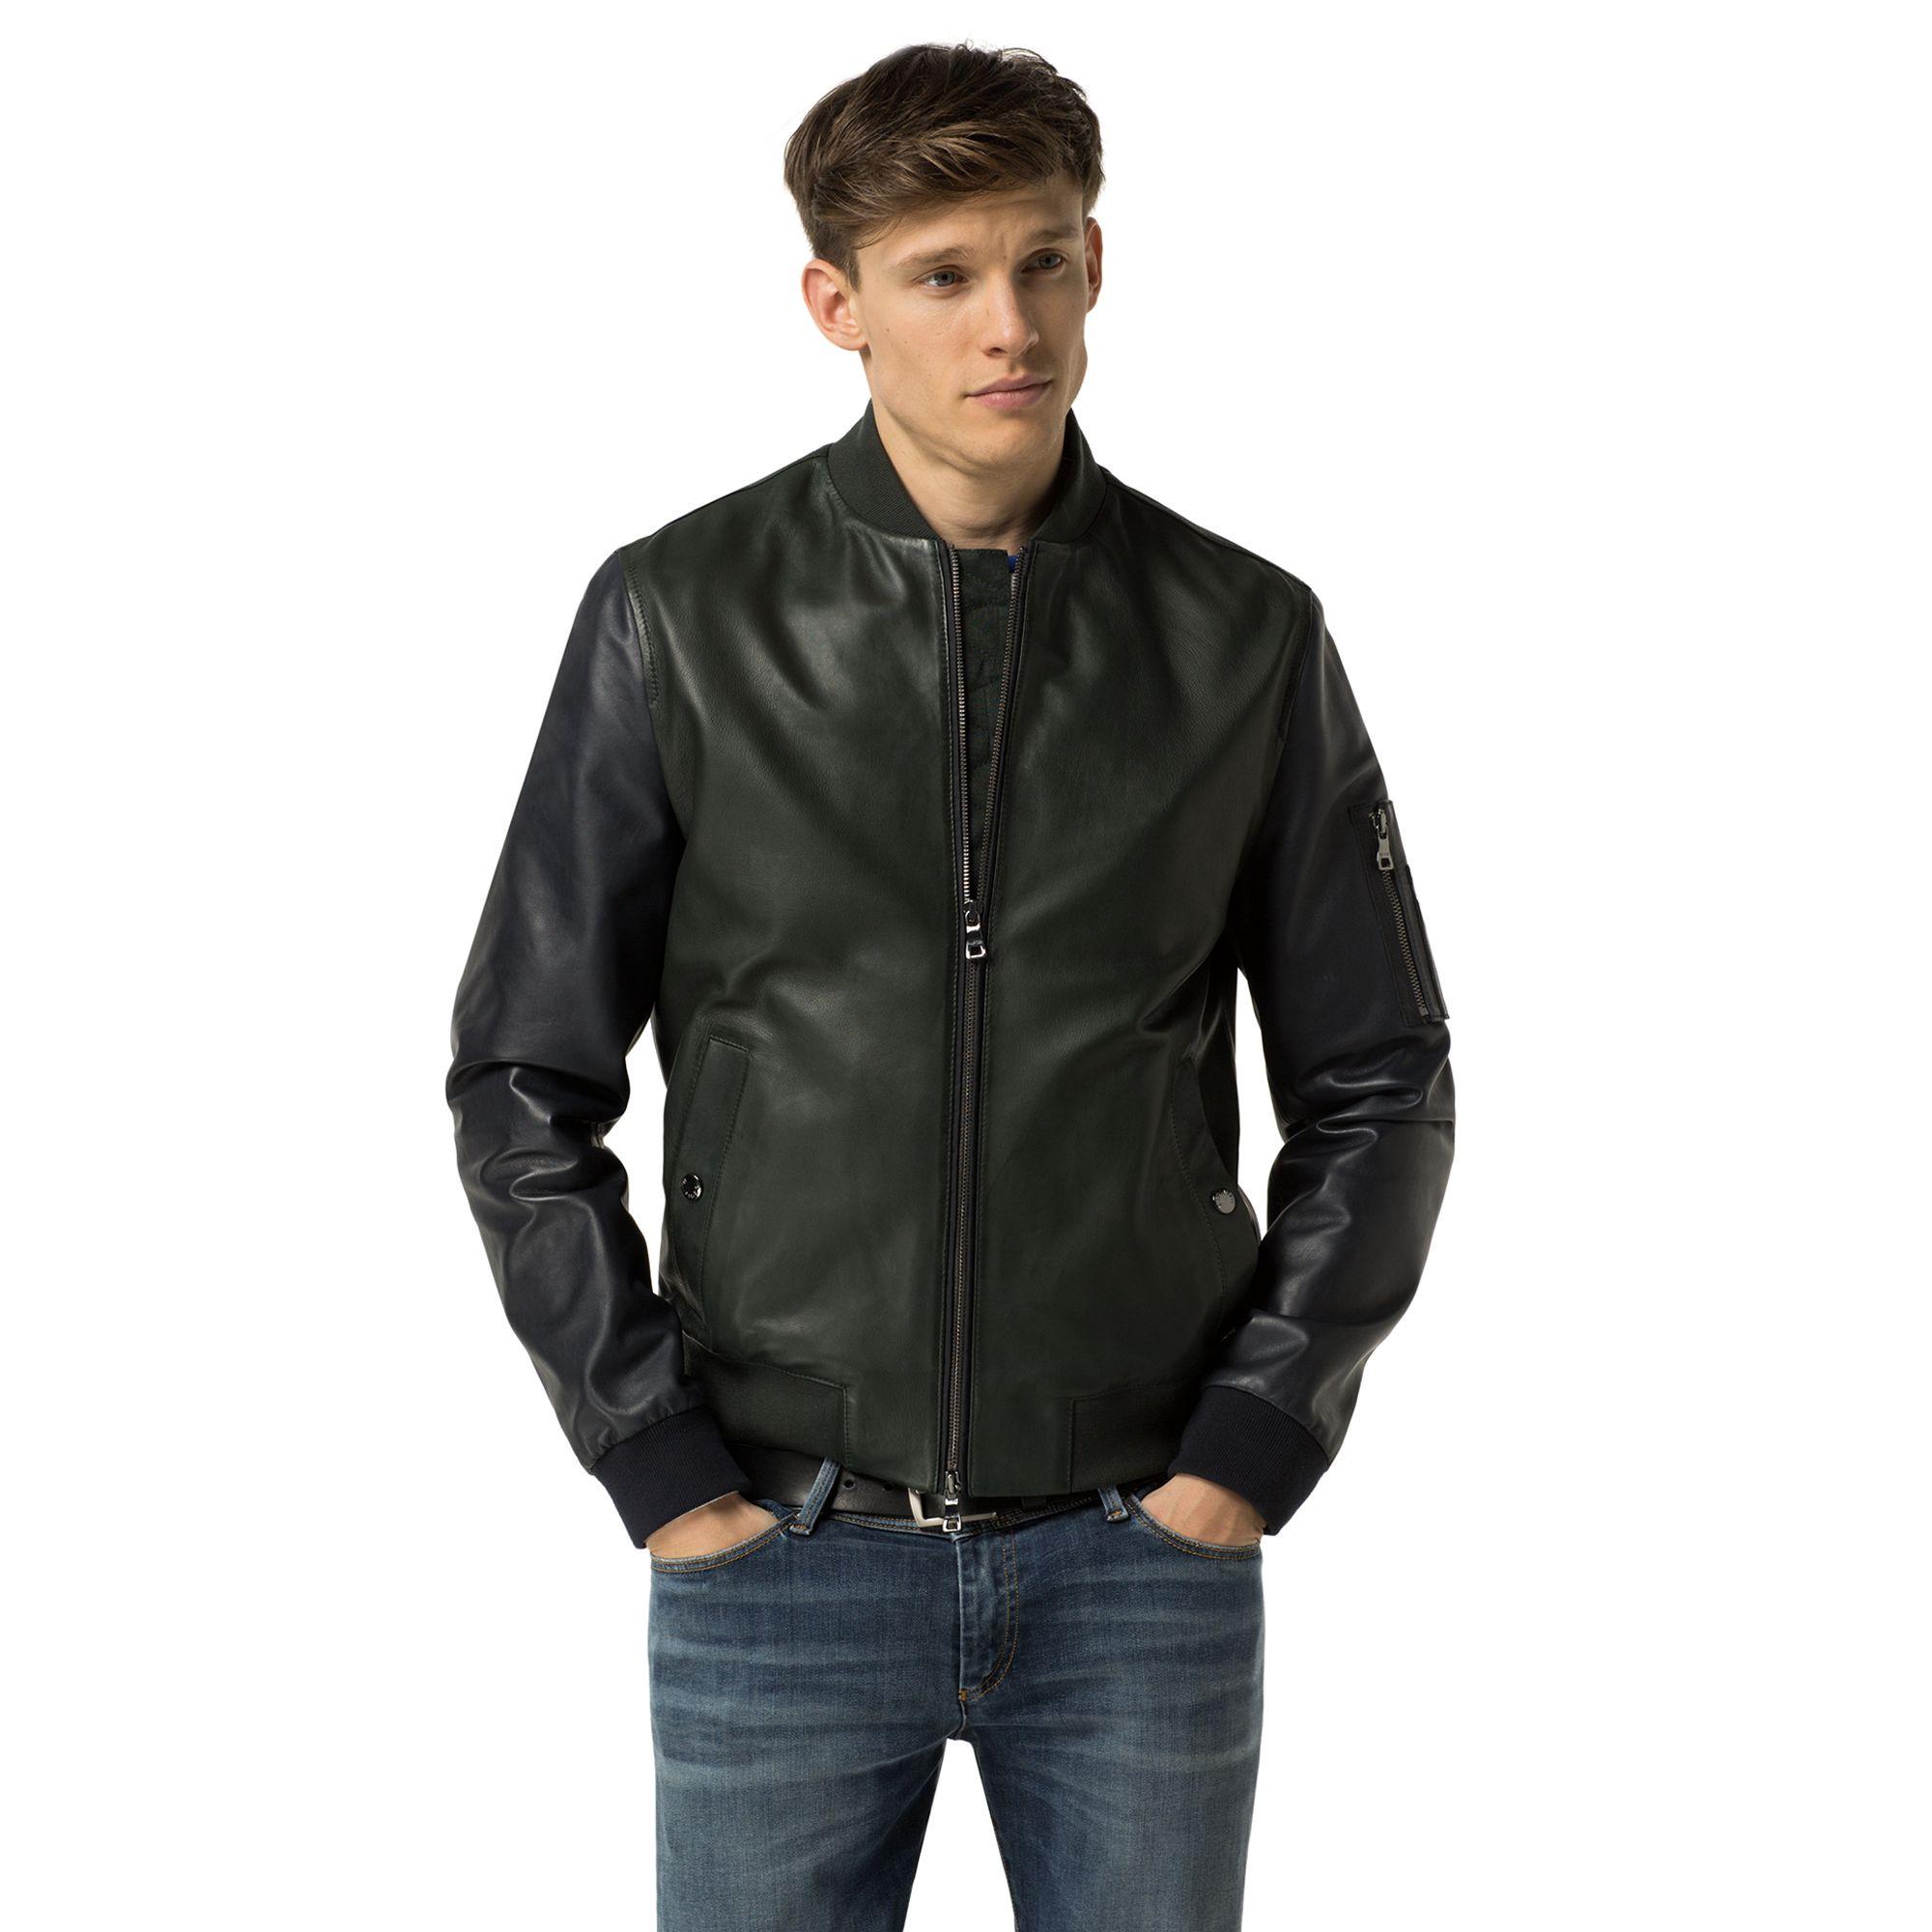 tommy hilfiger leather bomber jacket Off 61% - canerofset.com